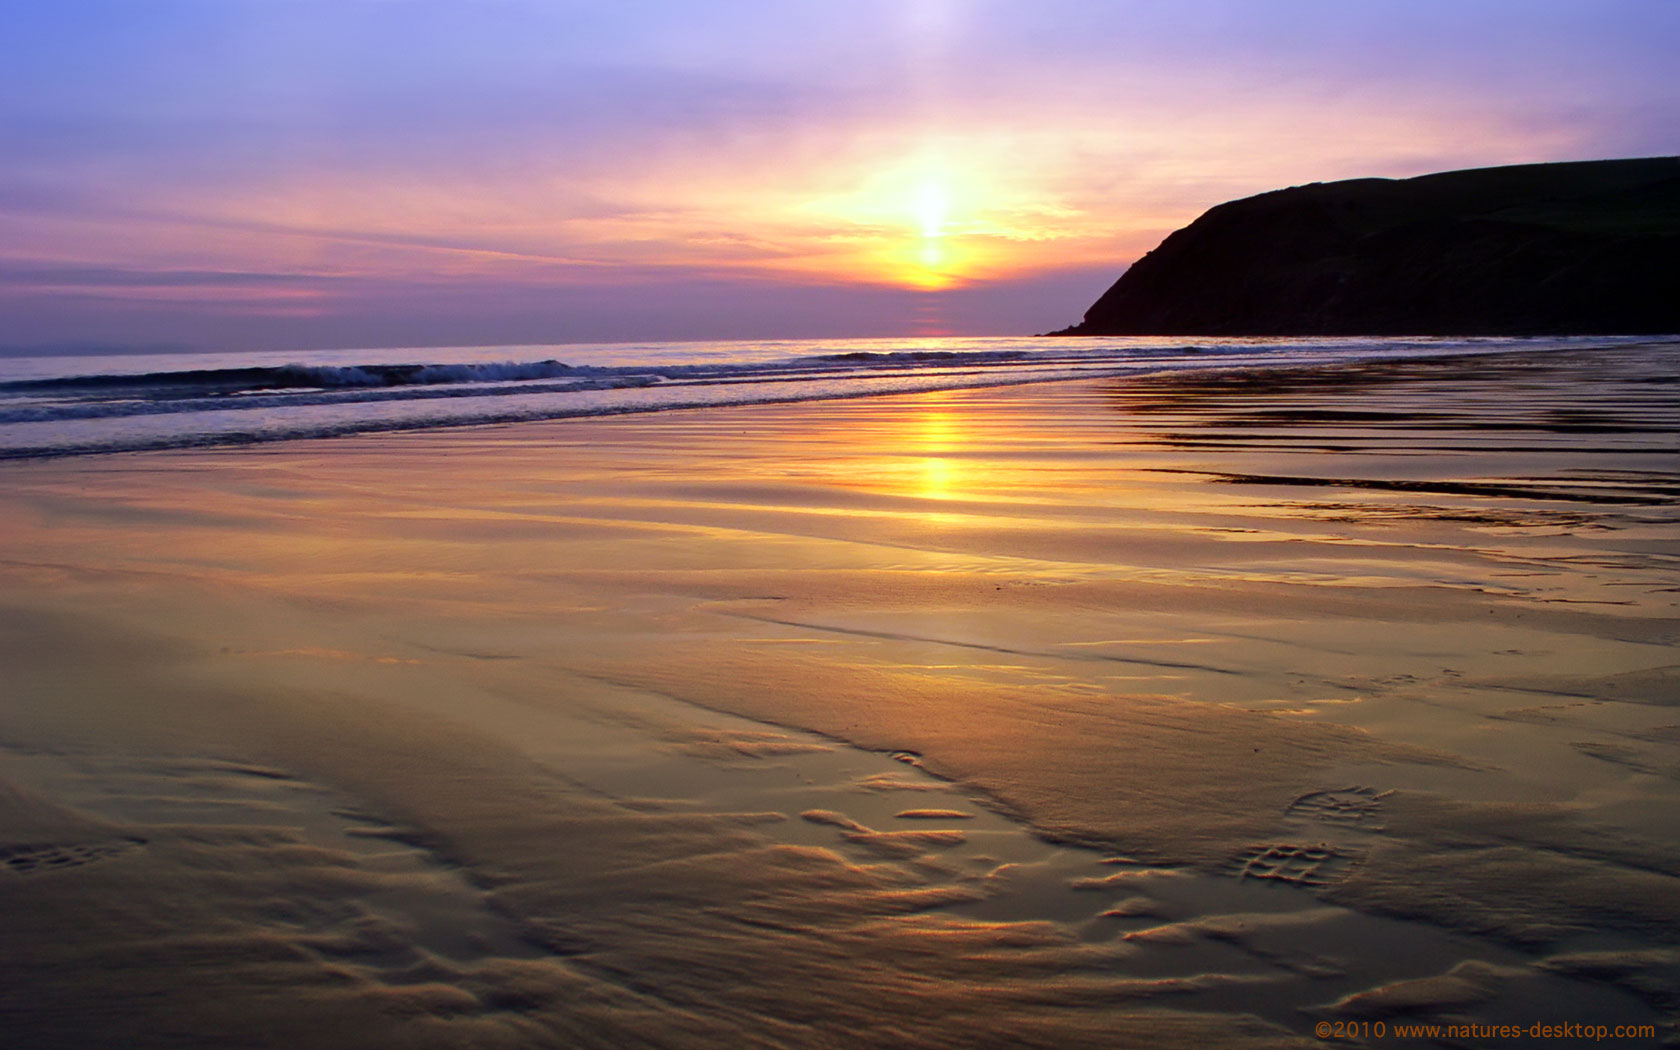 Beach Sunset Backgrounds For Desktop Wallpaper Best Hd 1680x1050